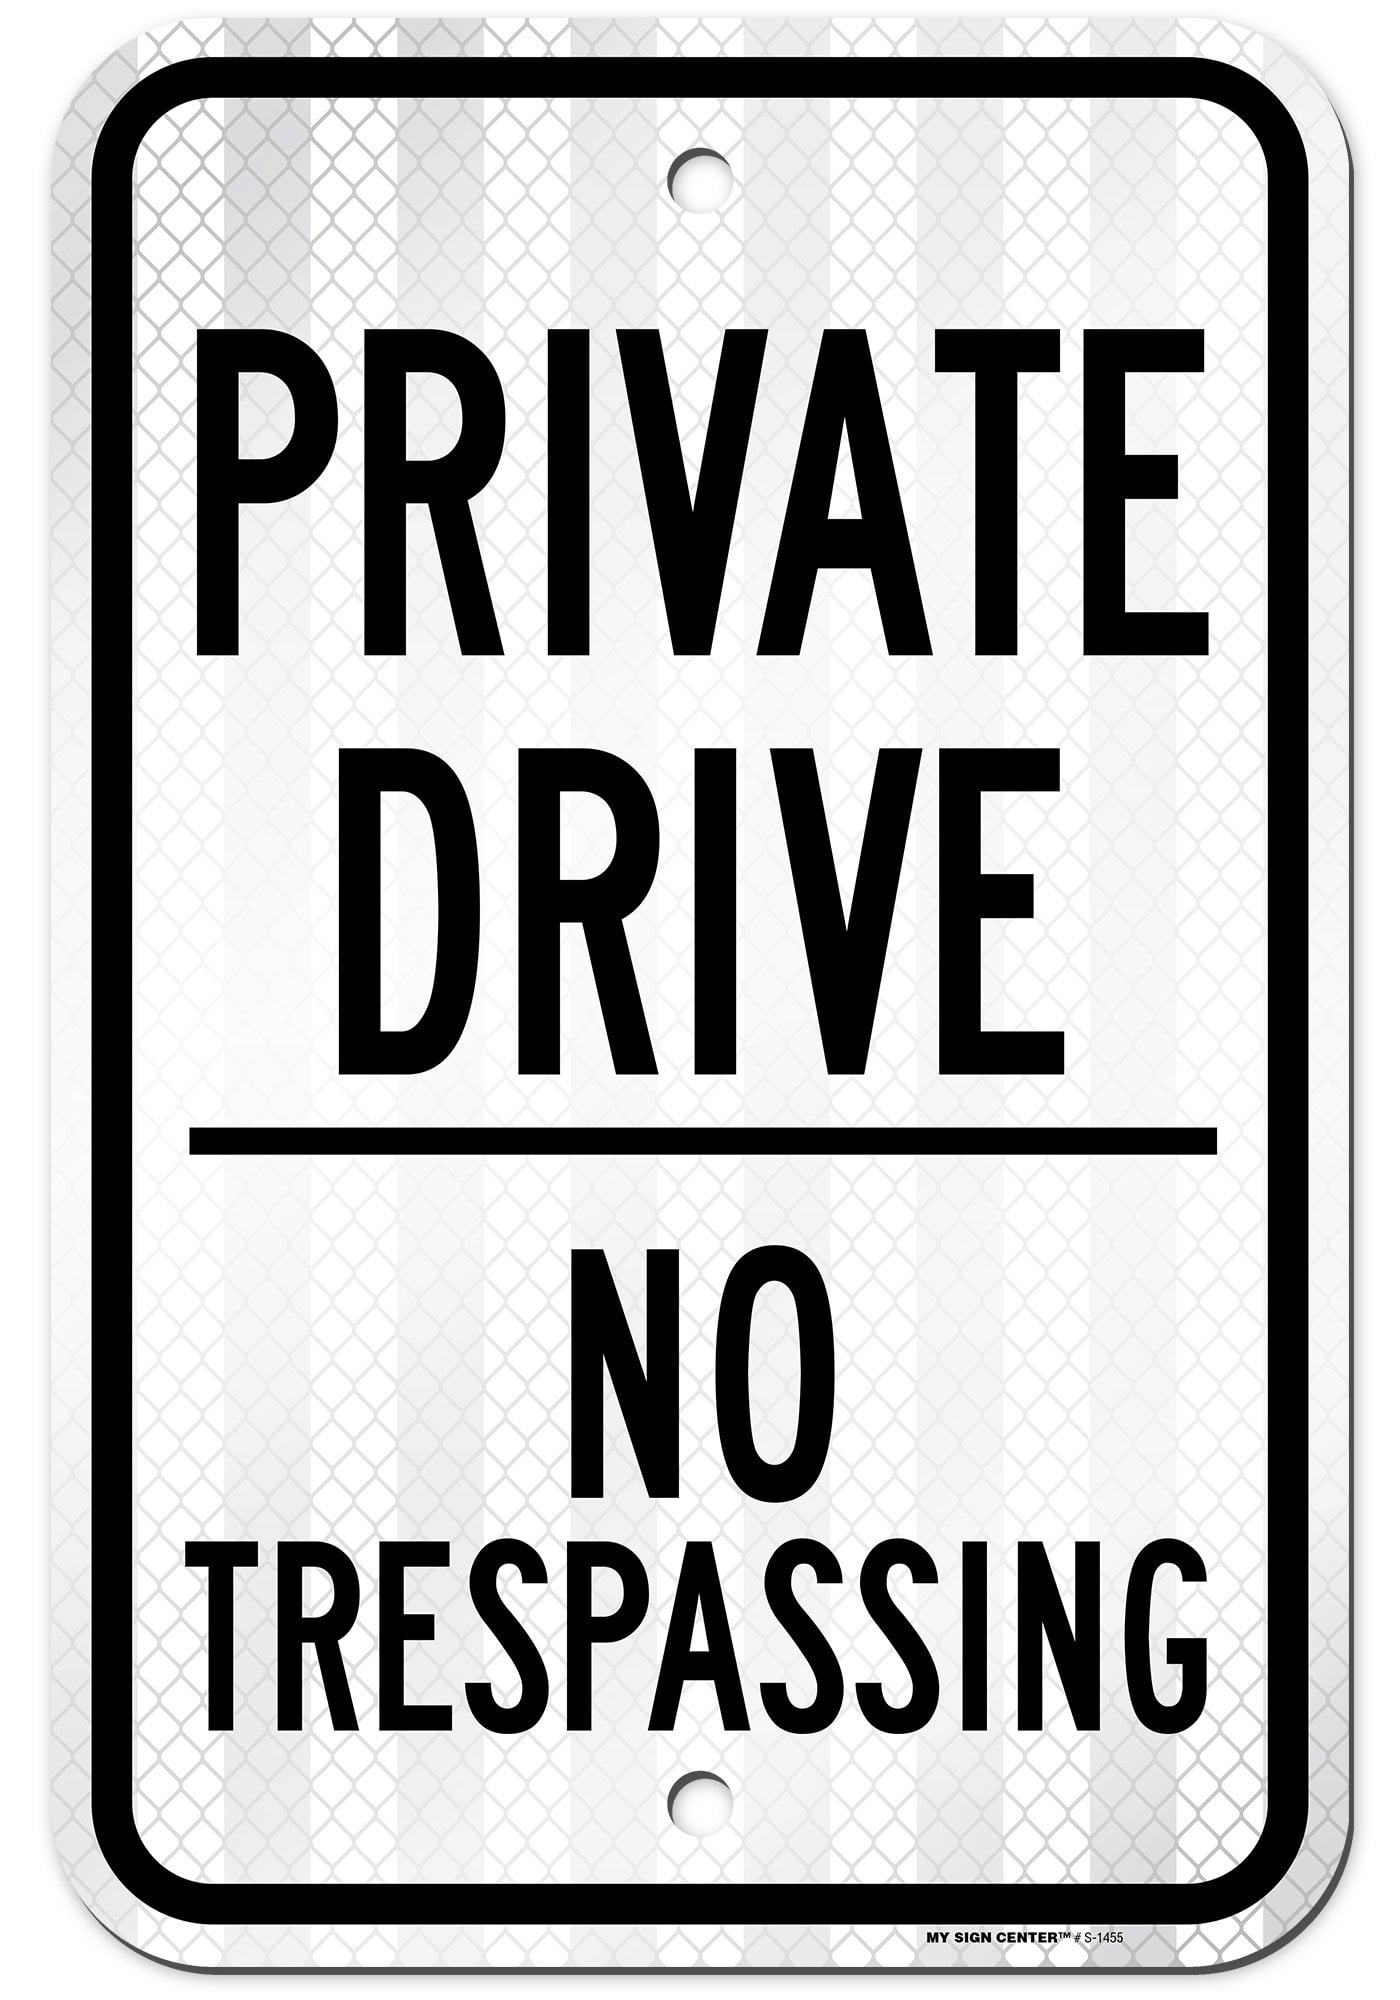 Private Drive No Trespassing 12 x 18 Aluminum Sign 